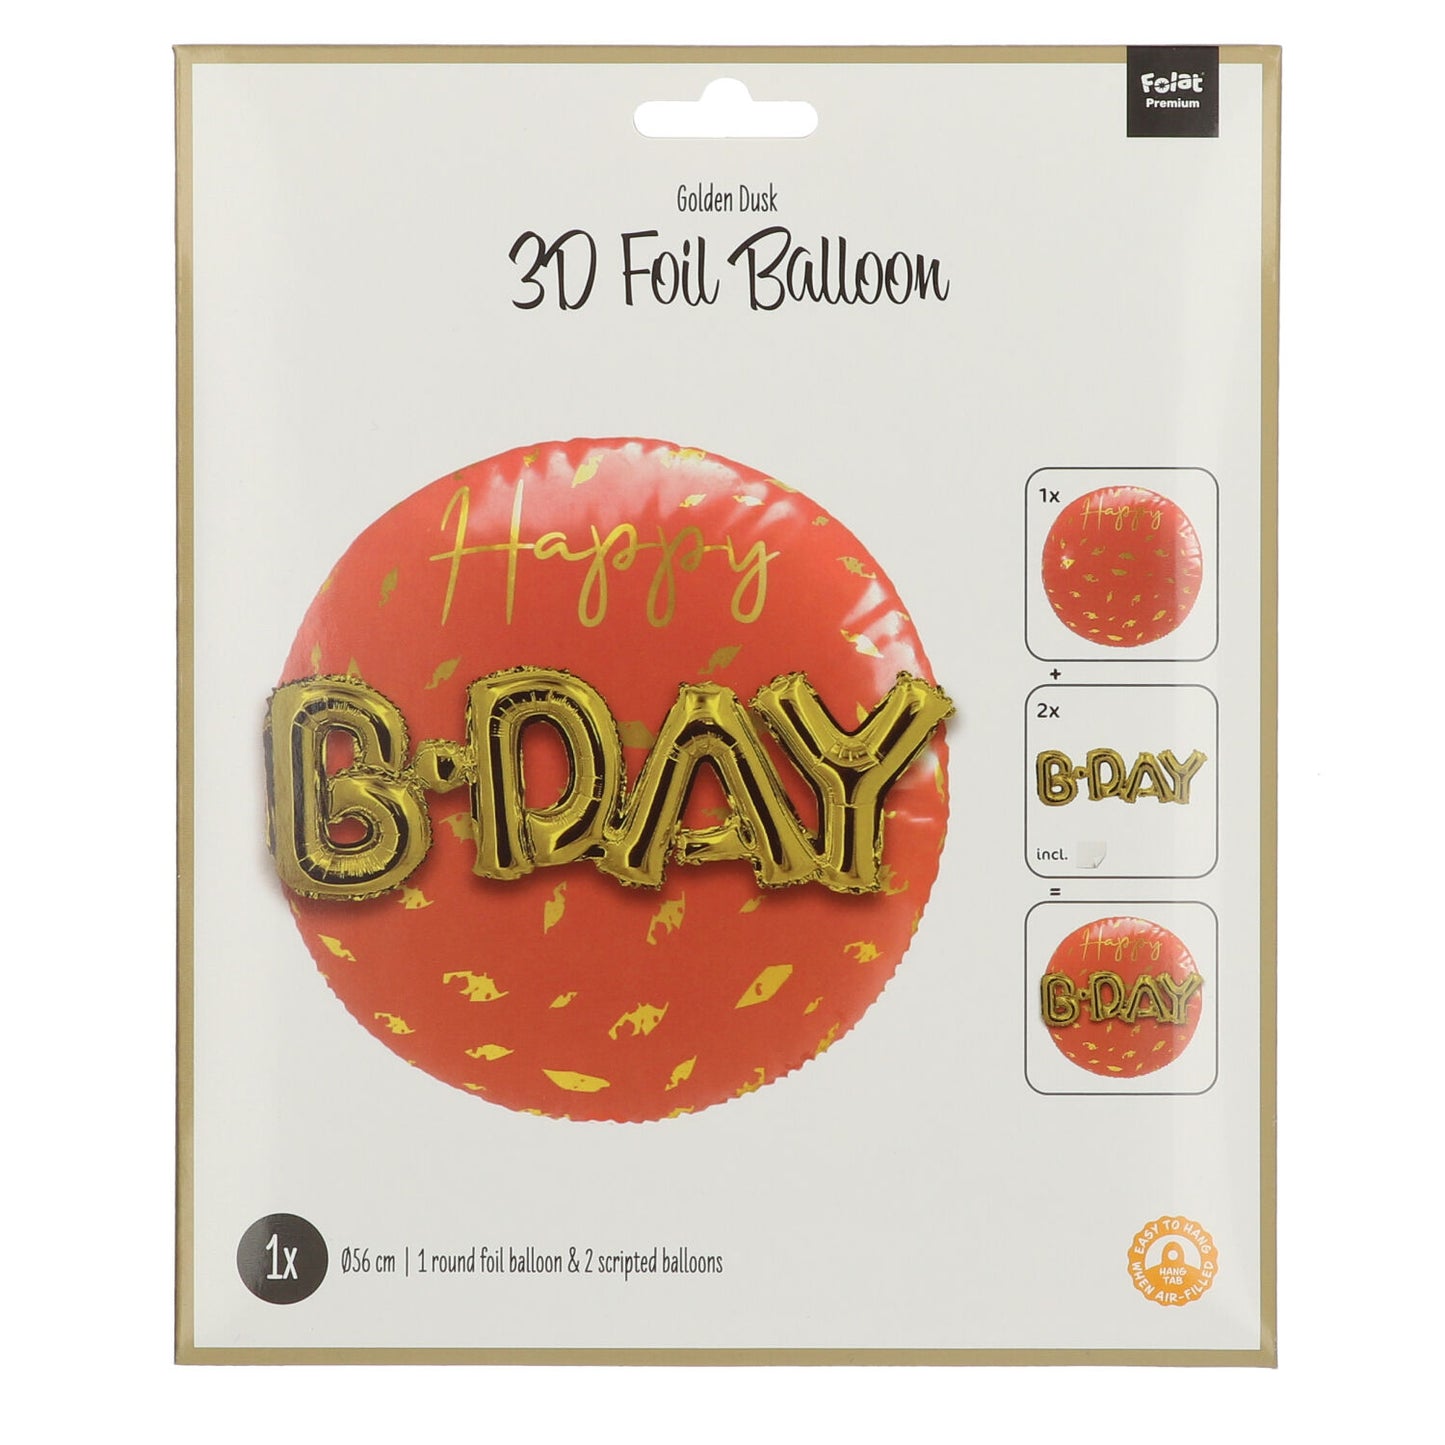 Golden Dusk Folie Ballon 3D